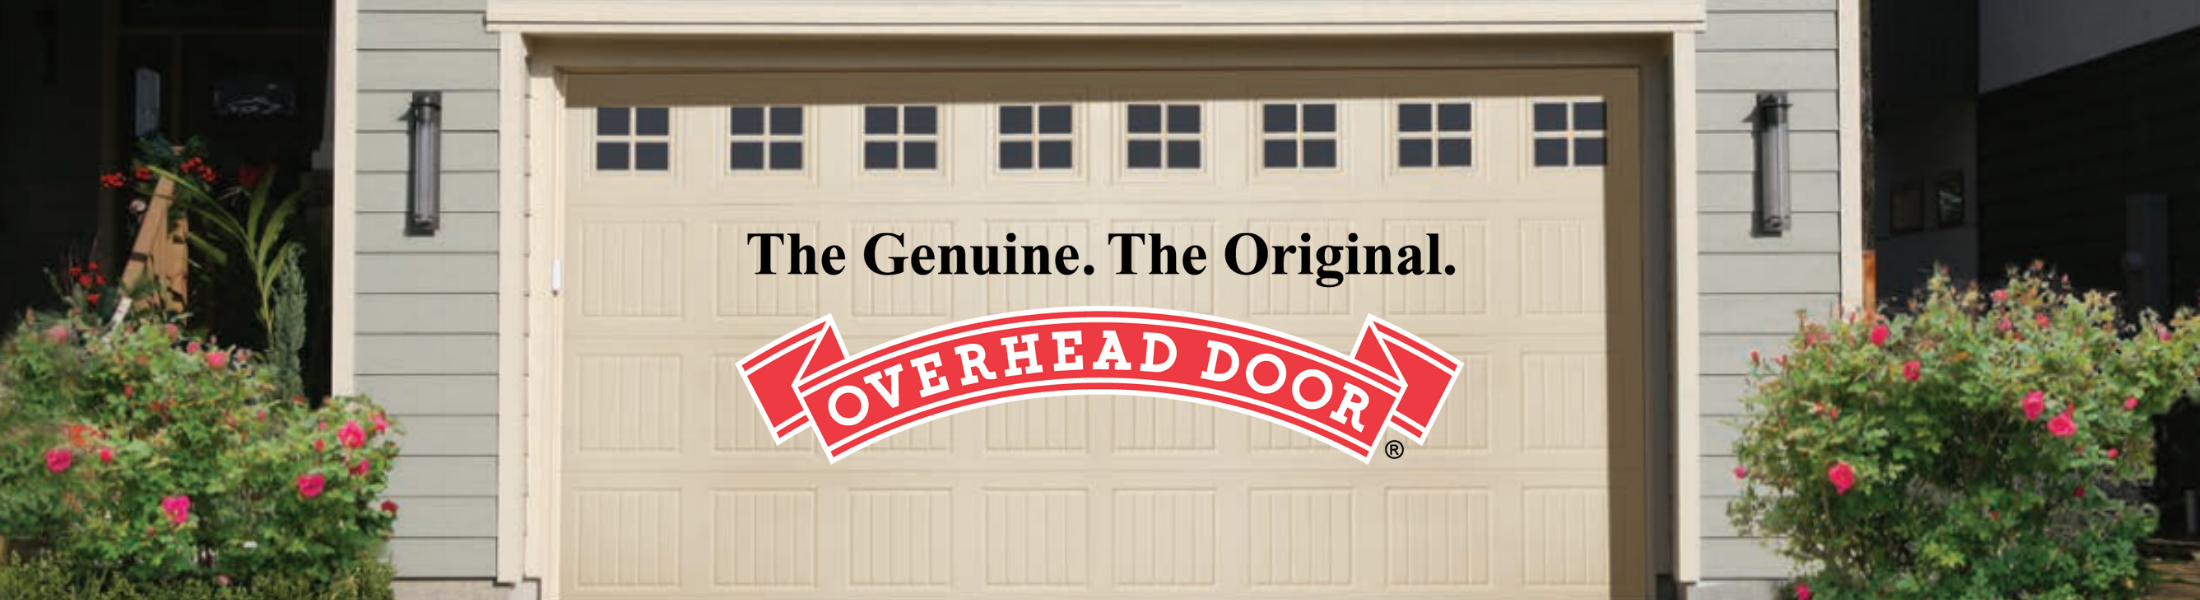 garage door with Overhead Door of North Arkansas logo